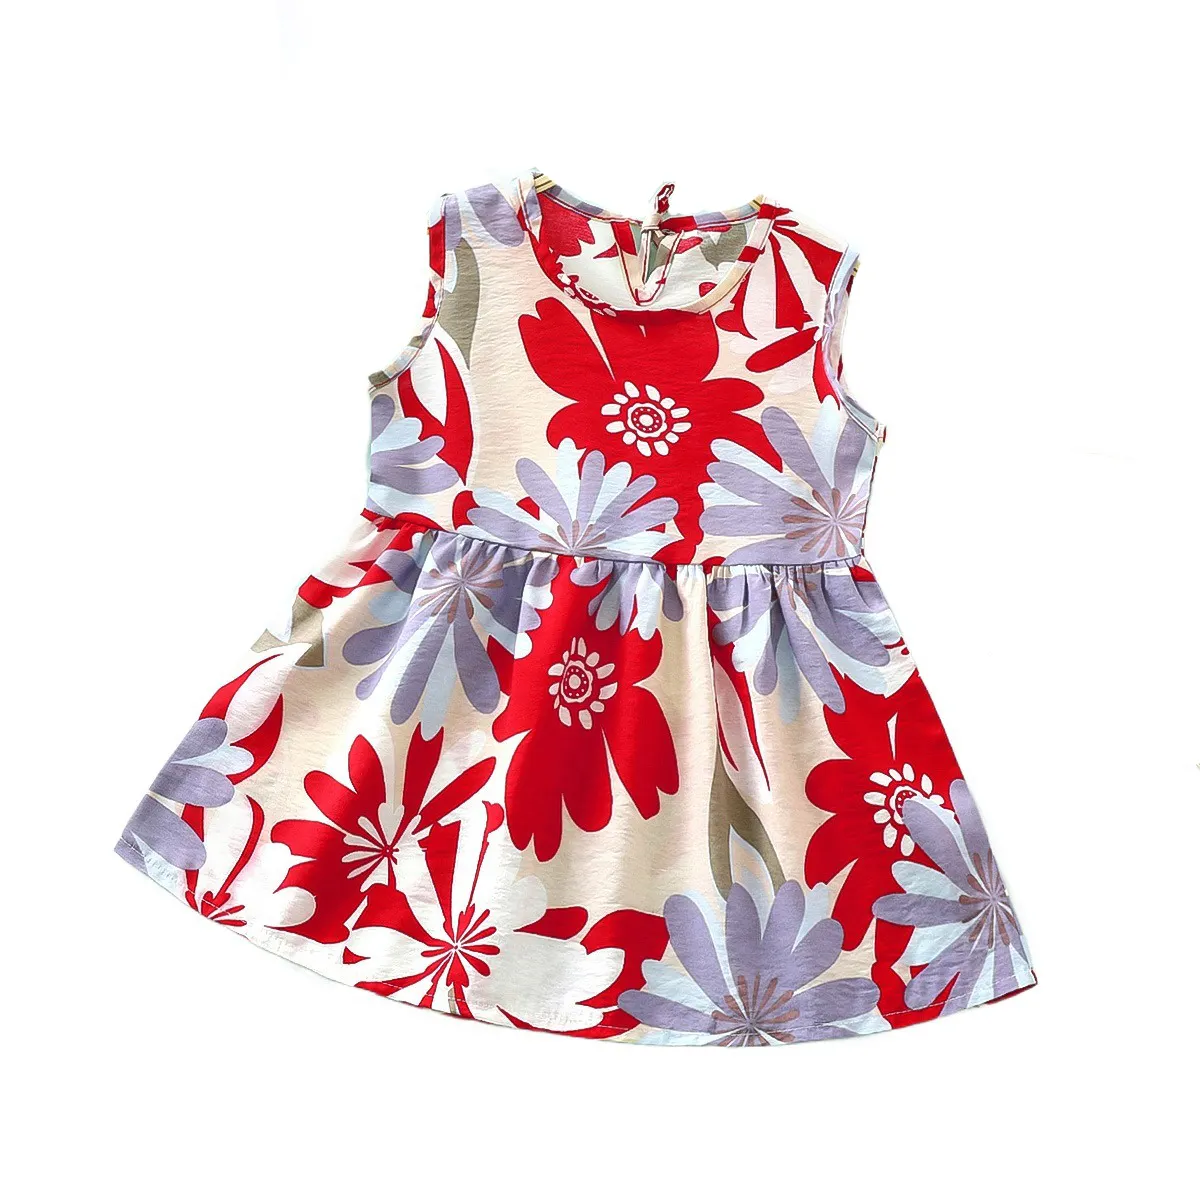 New Summer Kids' Skirts Pastoral Style Princess Skirt Dresses for Girls Flower Girls' Dresses Girls Party Dress